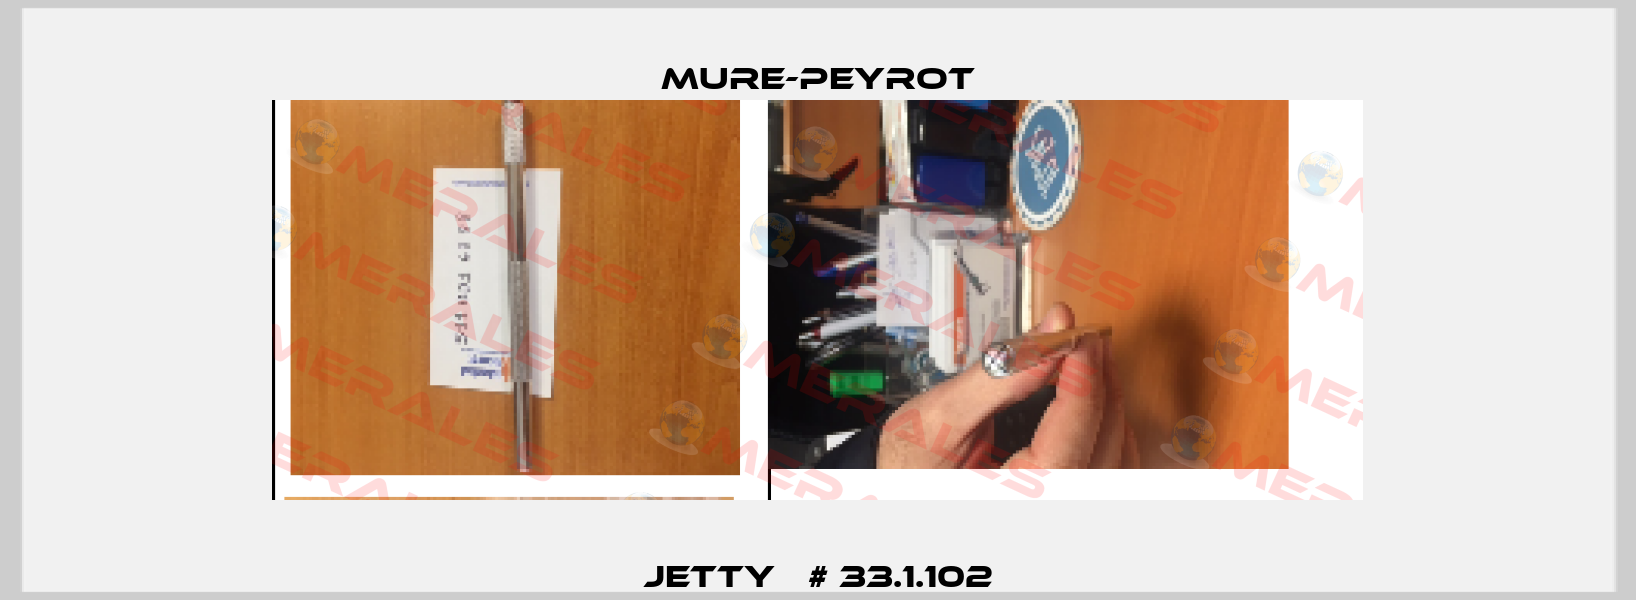 JETTY   # 33.1.102 Mure-Peyrot